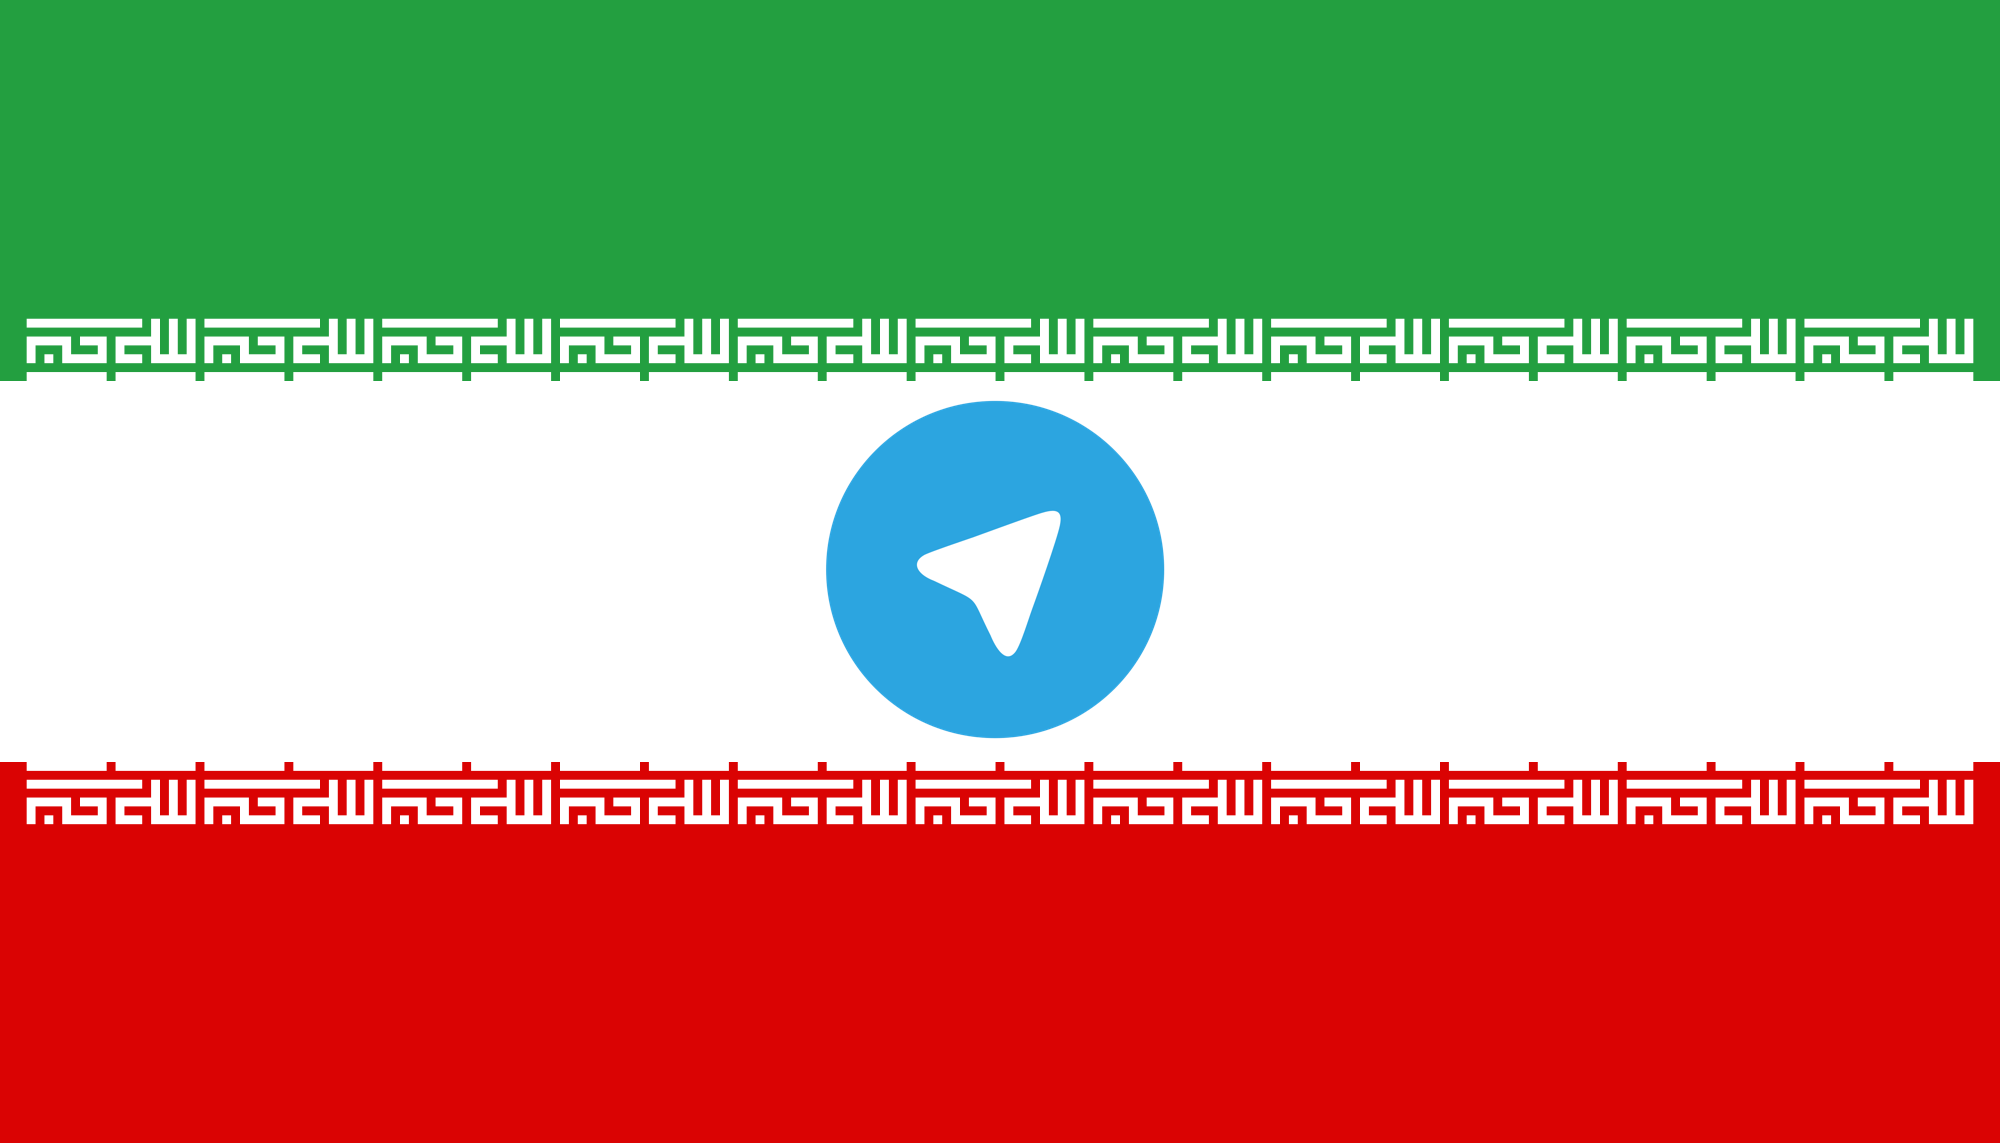 Telegram, как сообщается, находится в согласии с иранским правительством. Изображение ремиксовано автором.